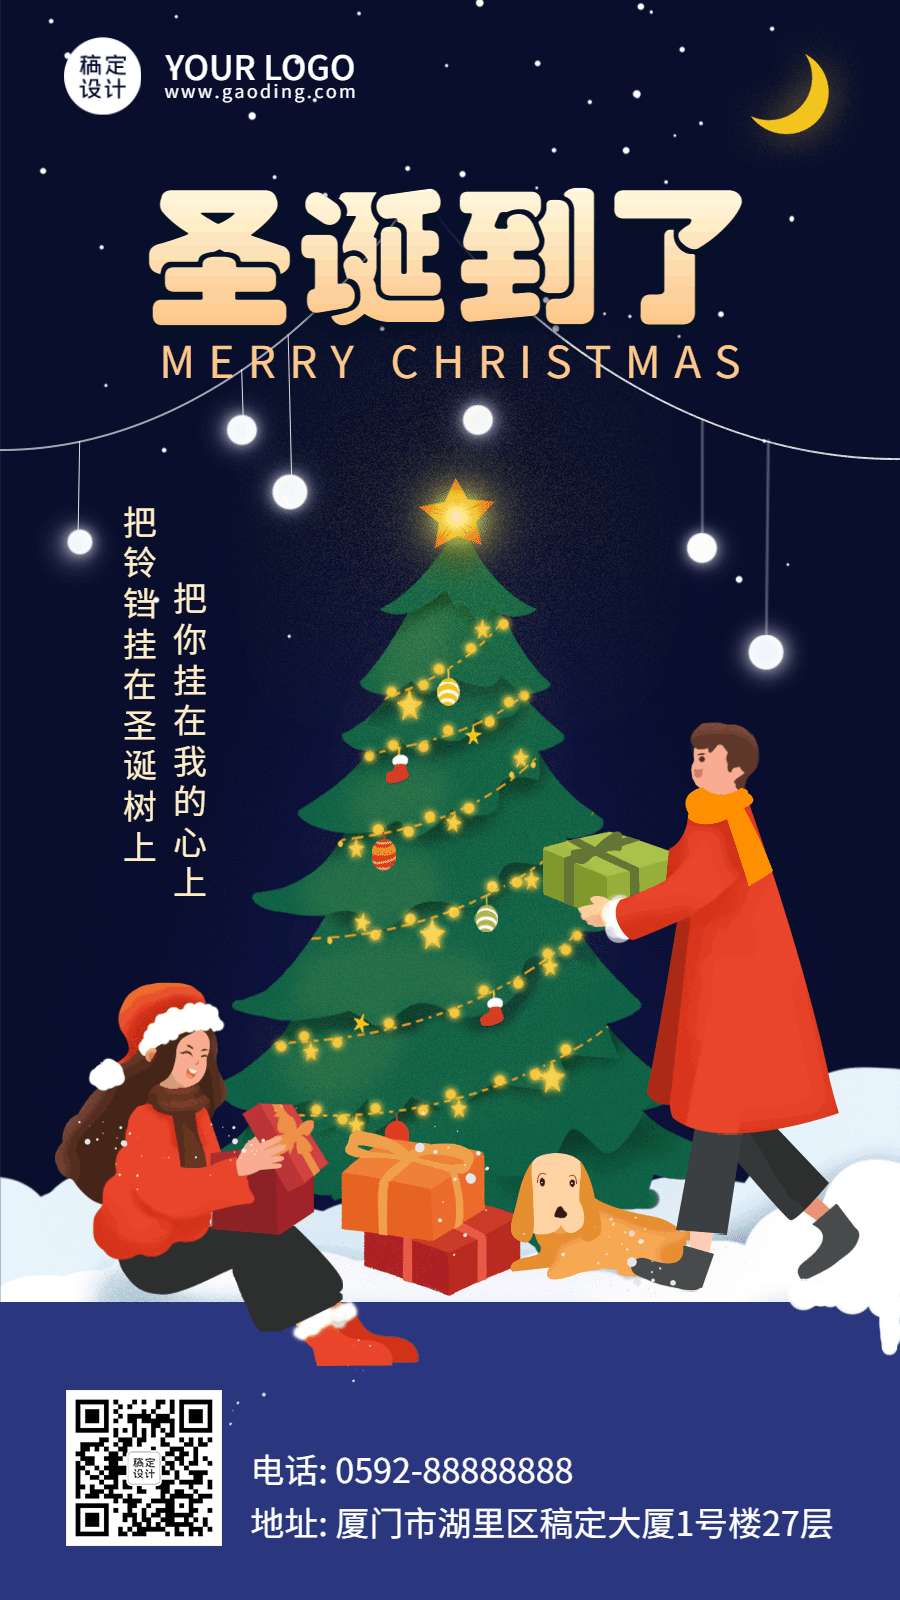 圣诞节可爱圣诞树祝福GIF动态海报预览效果